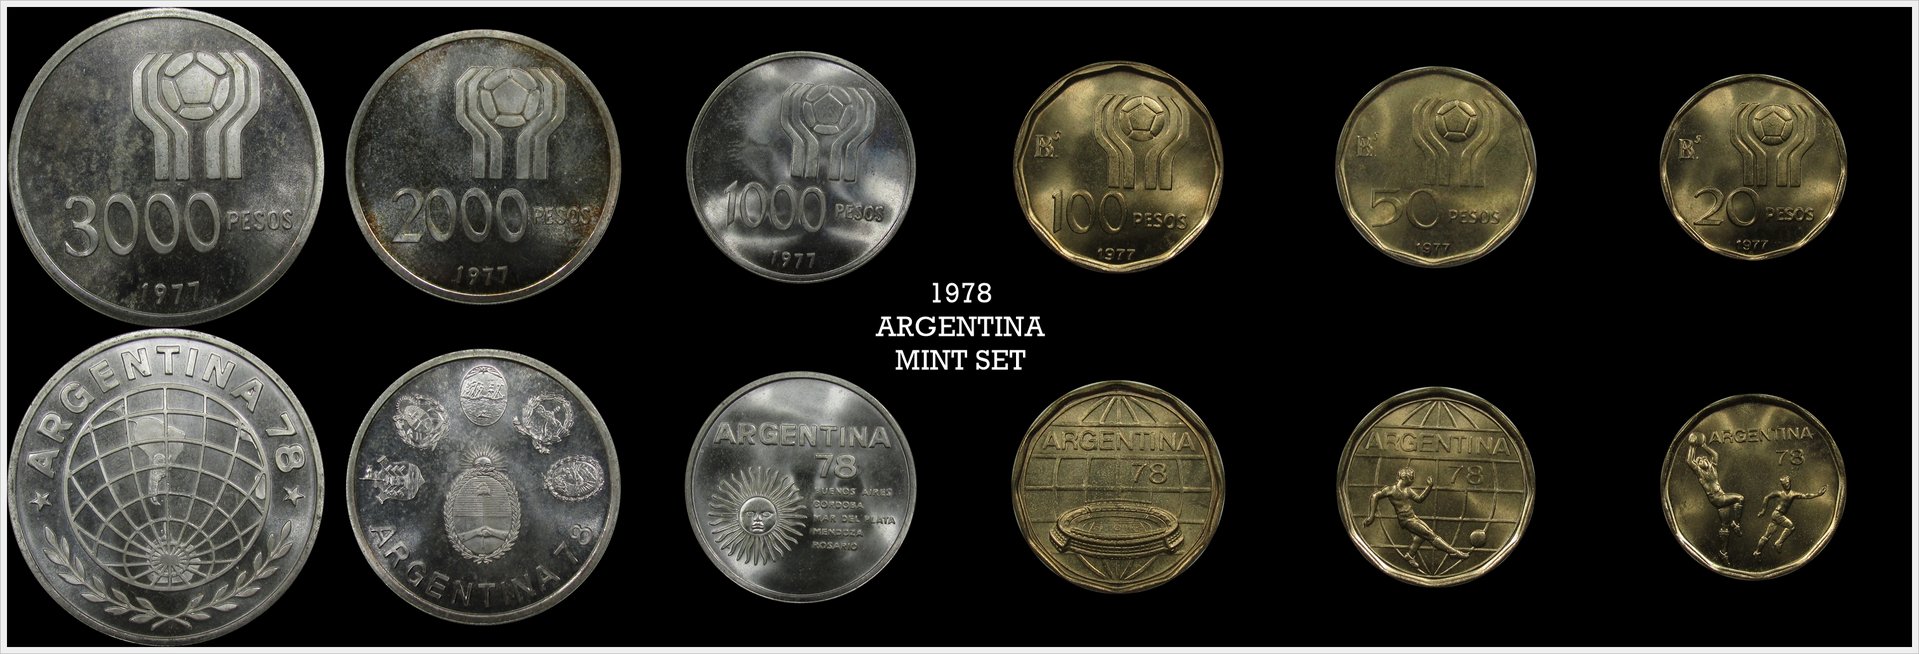 Argentina 1978 Mint Set.jpg